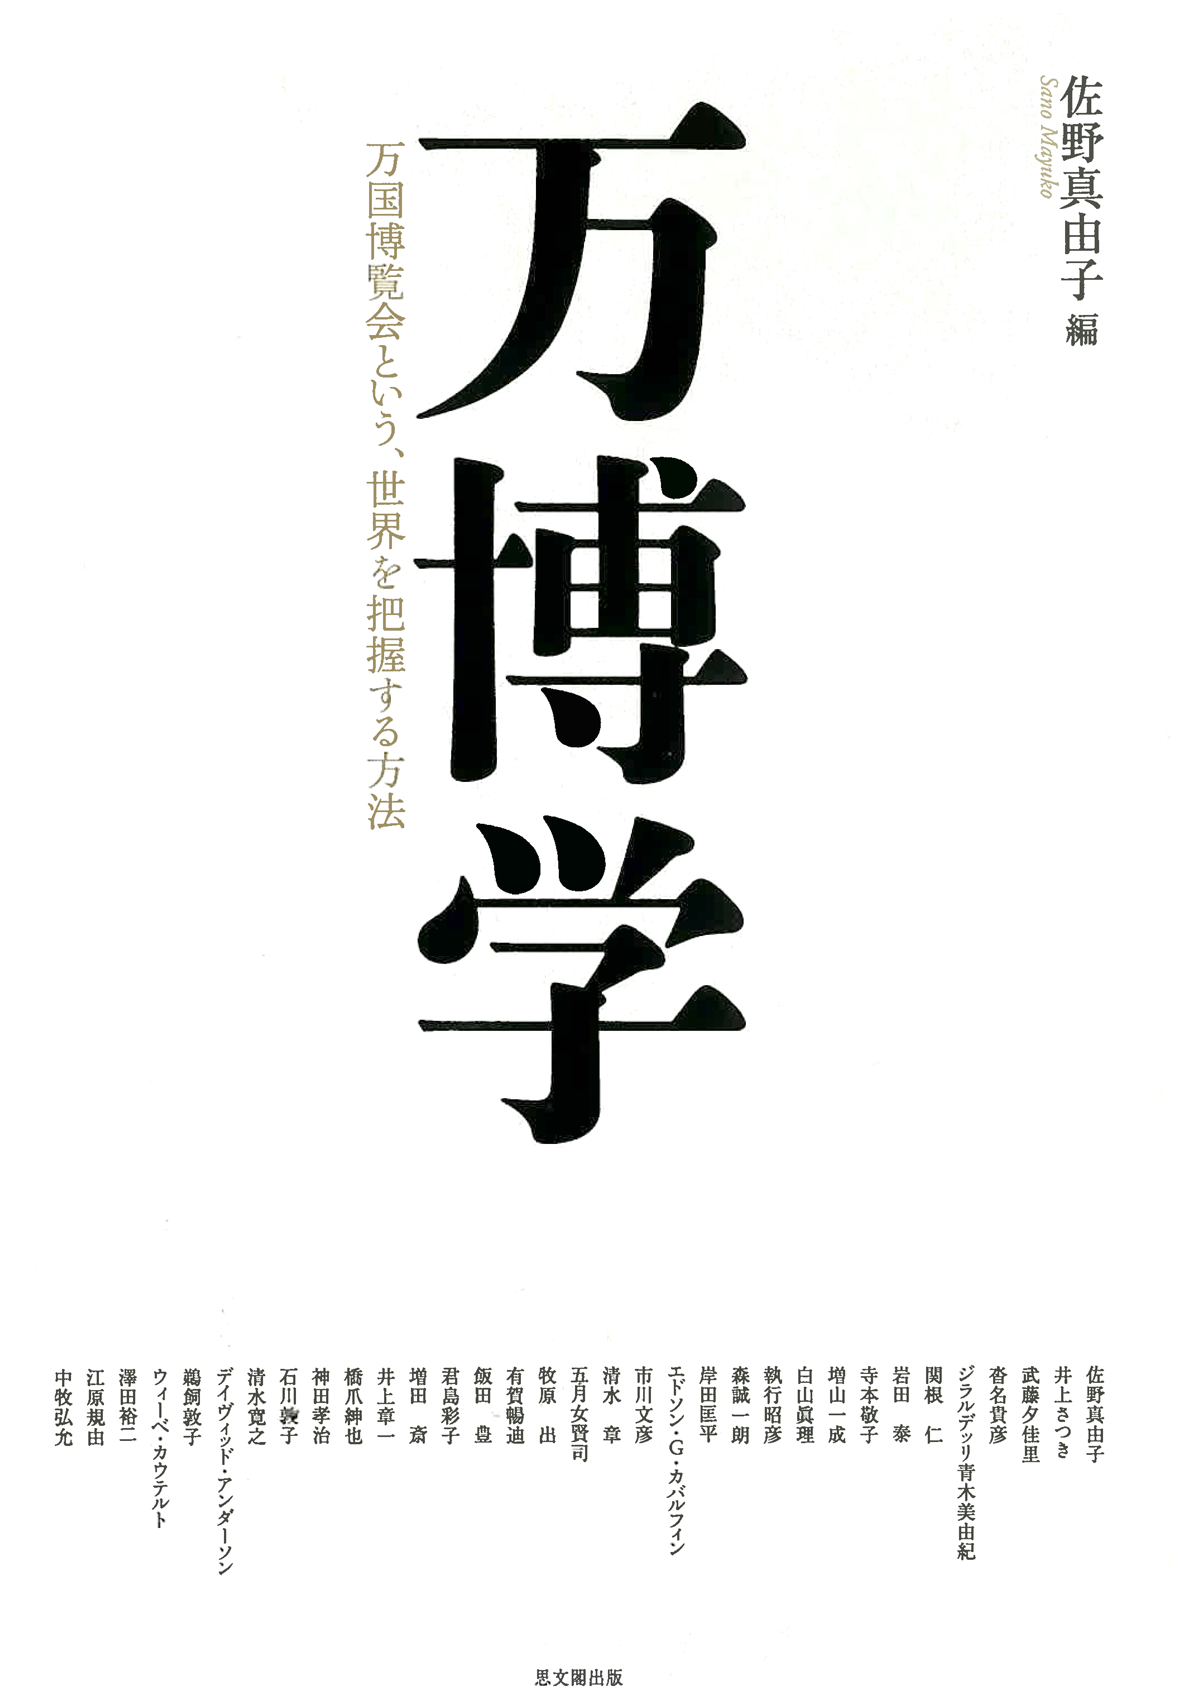 Banpaku gaku: Bankoku hakurankai to iu sekai o haaku suru hōhō <span>(Expo-logy: Expos as a Method of Grasping the World)</span>